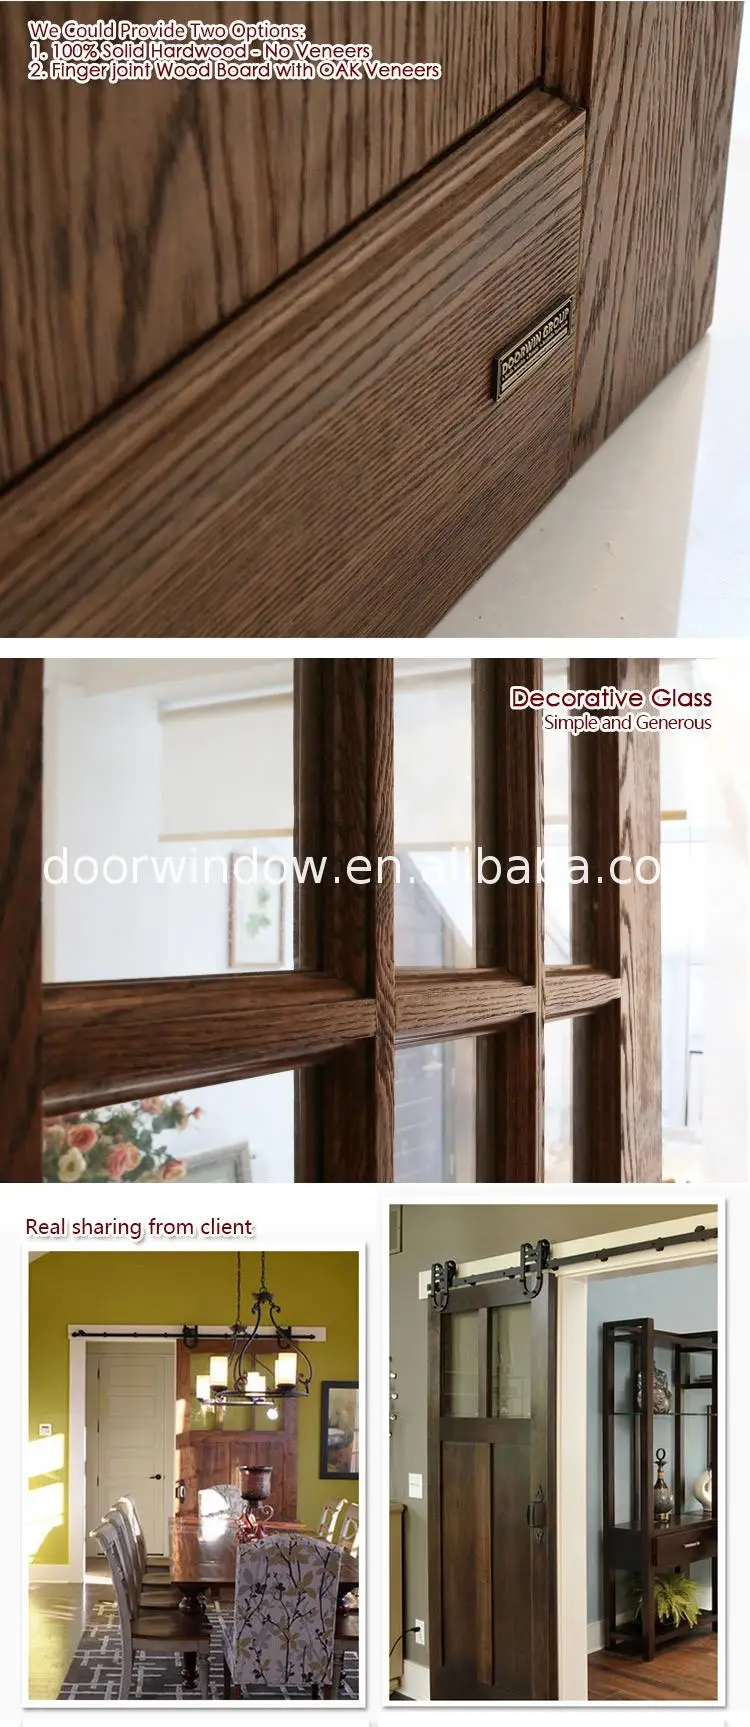 High performance rustic interior barn doors indoor room door design with glass